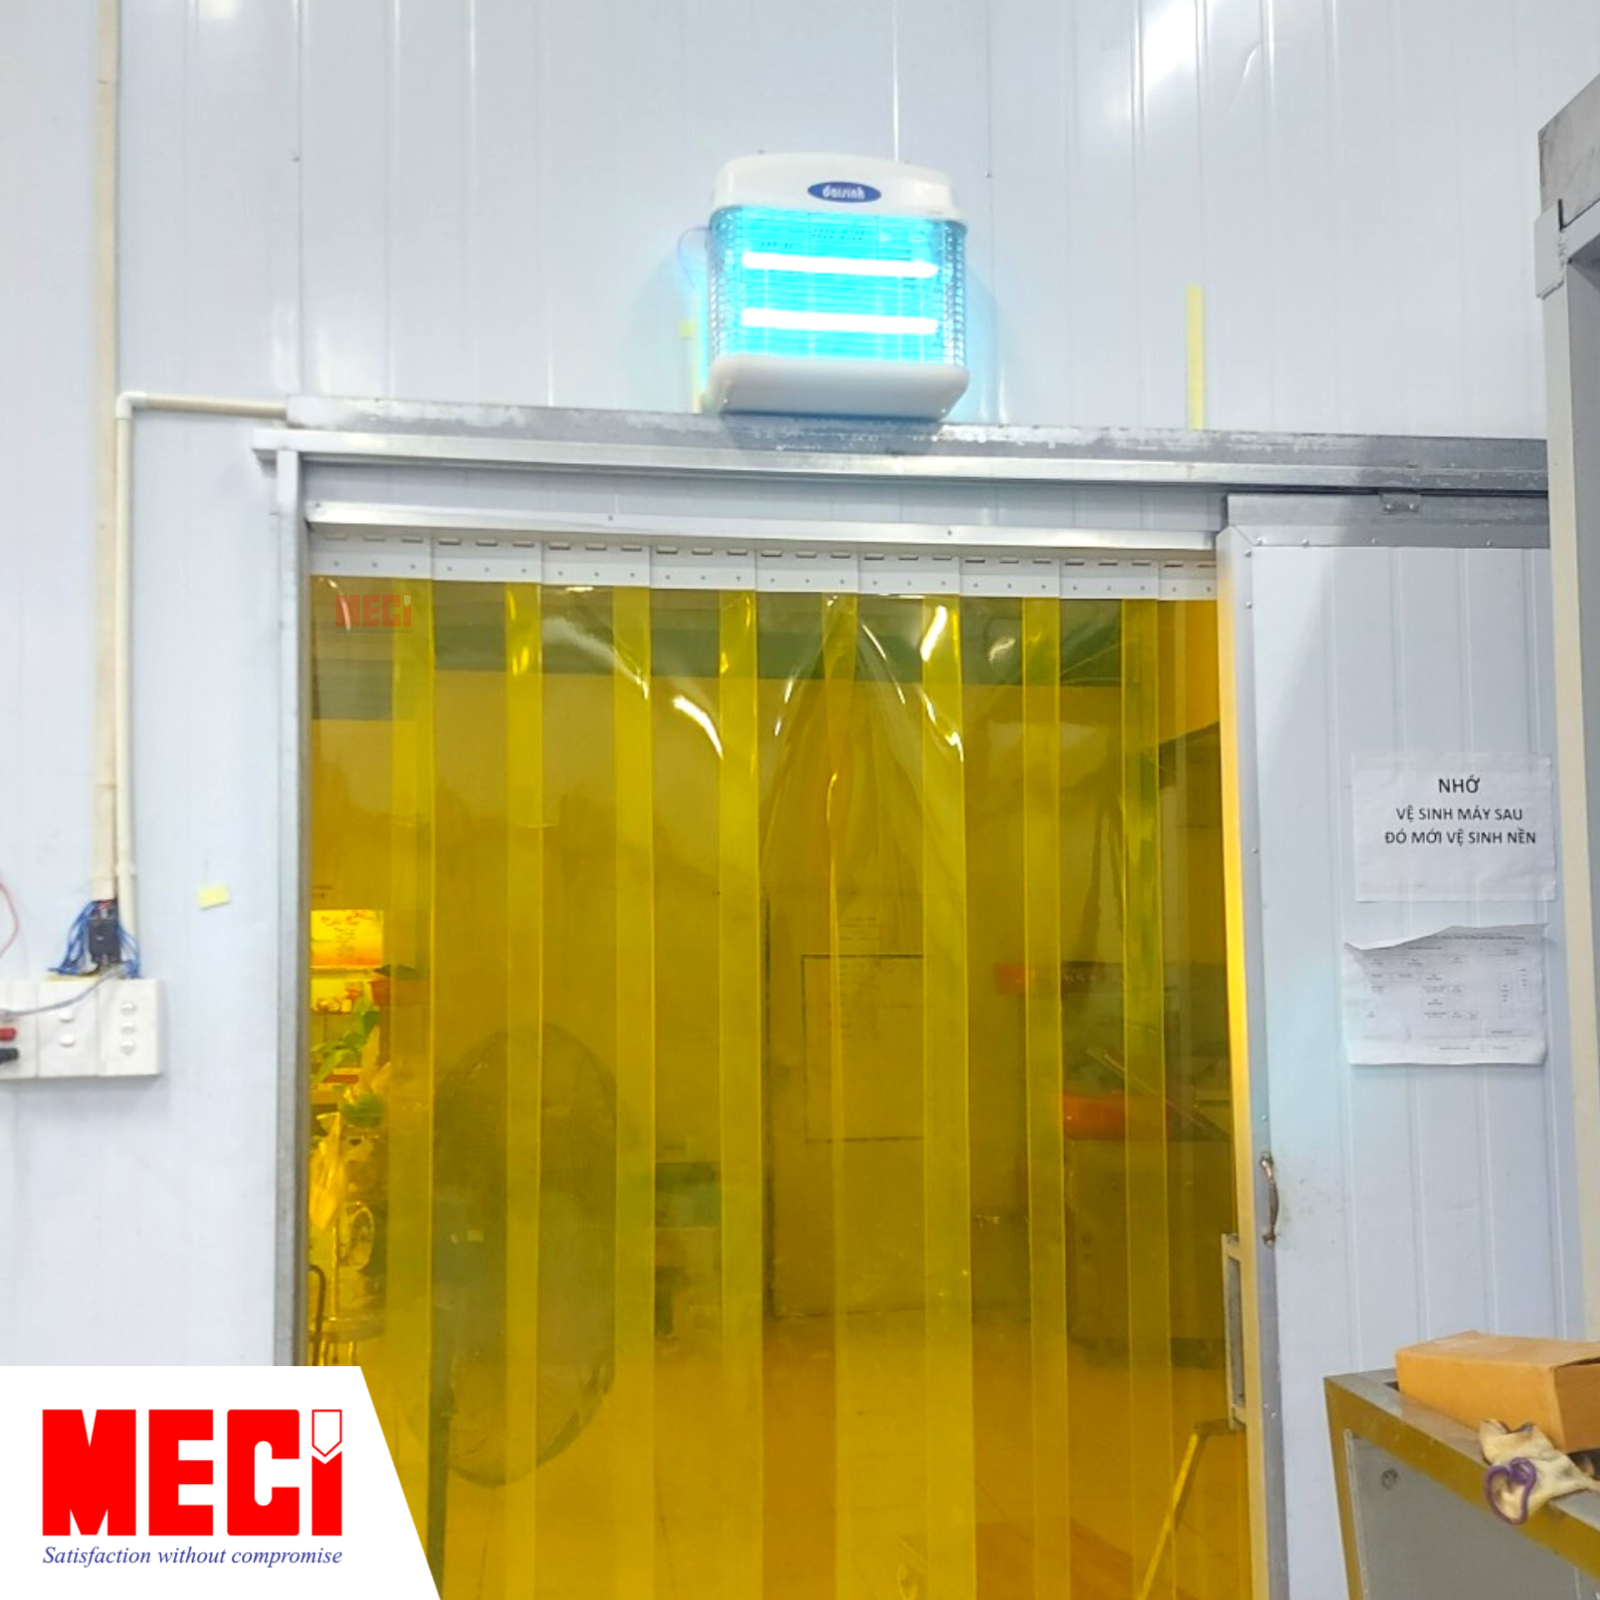 Đèn diệt côn trùng được lắp phía trên màn nhựa PVC màu vàng tại cửa của nhà máy chế biến tổ yến